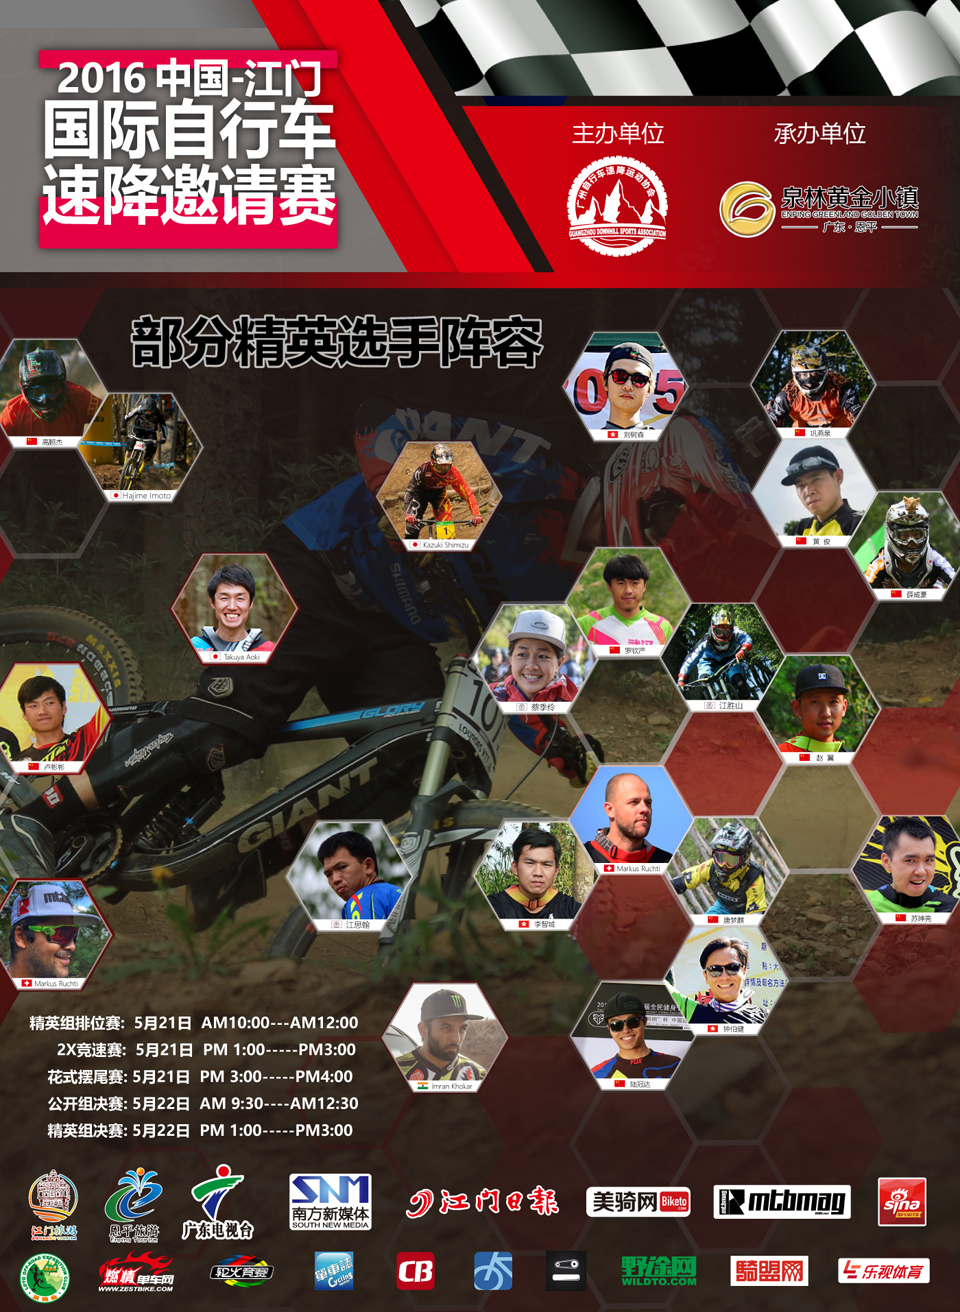 2016中国·江门首届国际自行车速降邀请赛